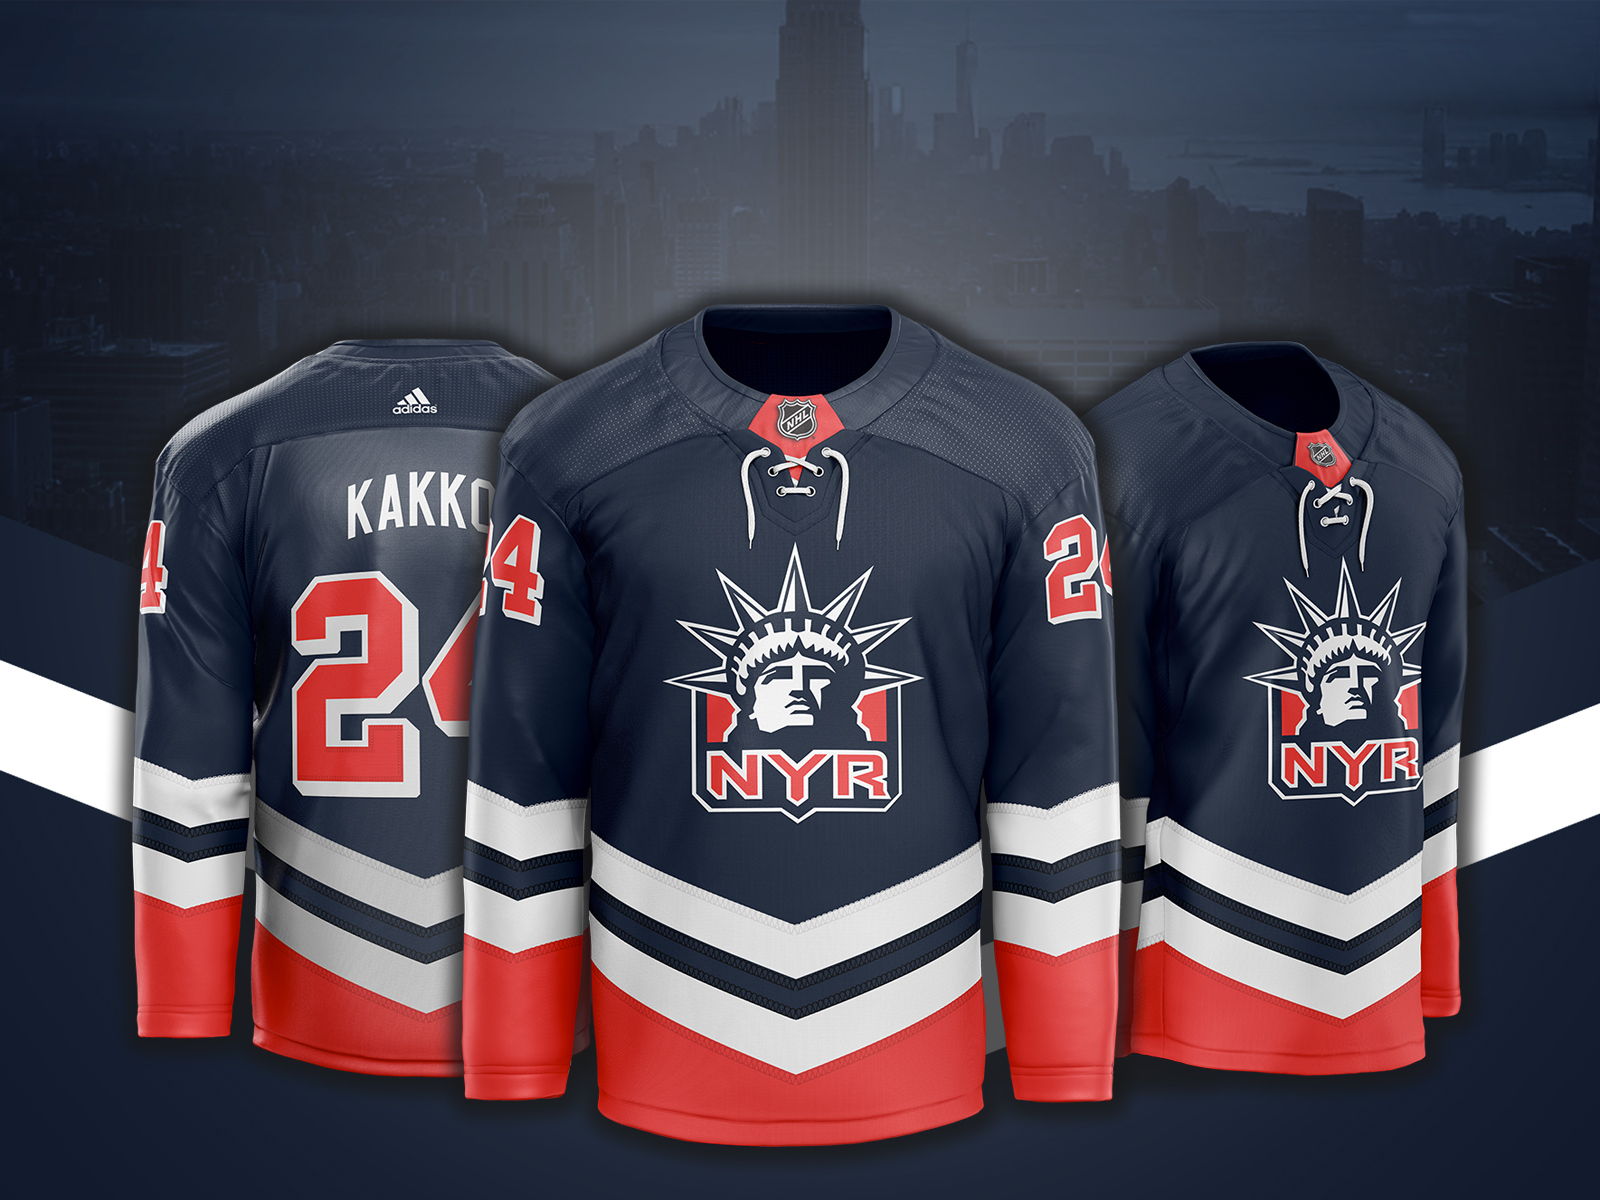 NY Rangers bringing back the Lady Liberty jerseys?